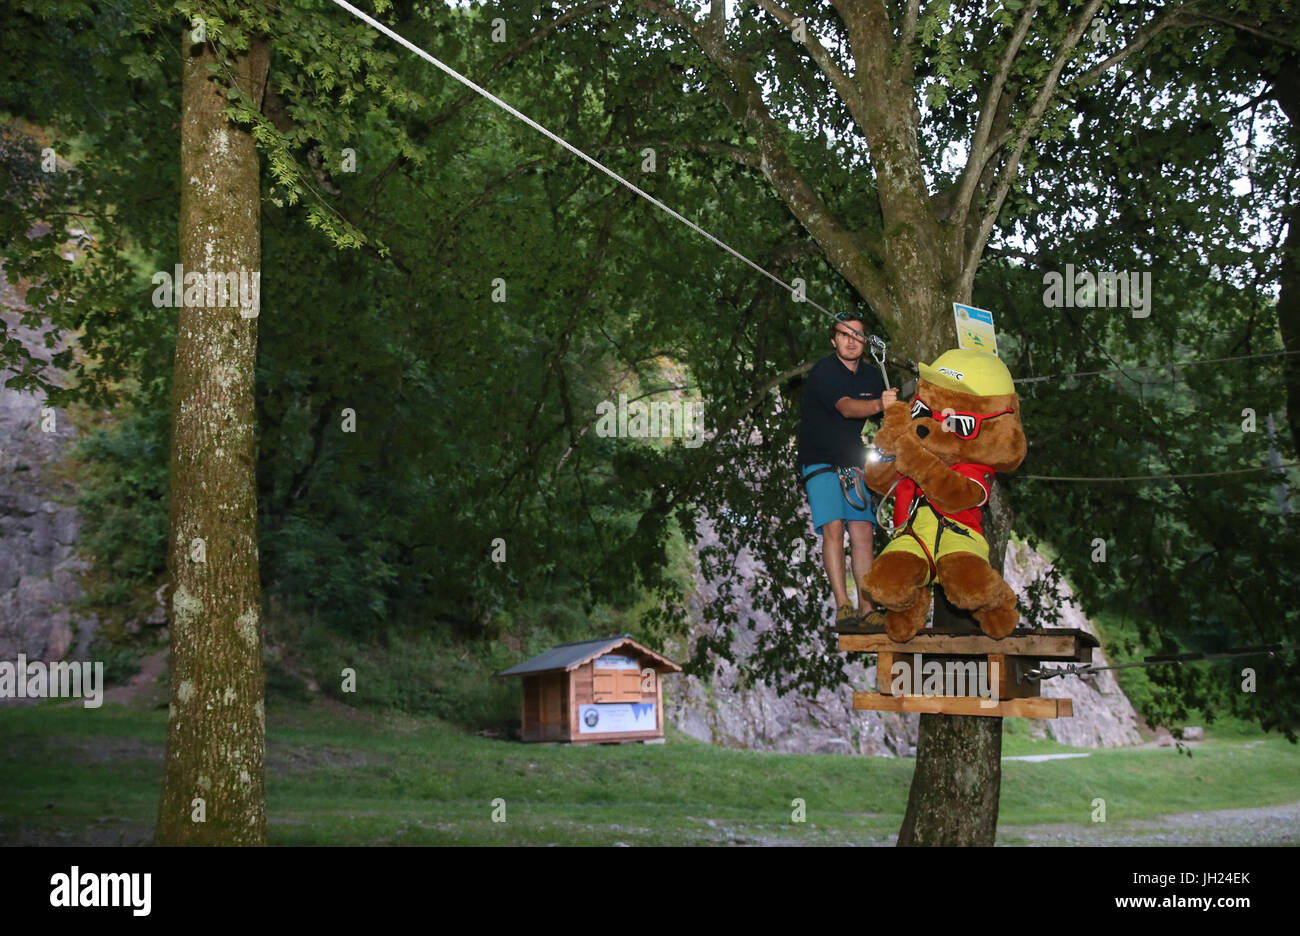 Parc aventure dans les bois. Charlotte la Marmotte mascotte de Saint-Gervais. La France. Banque D'Images